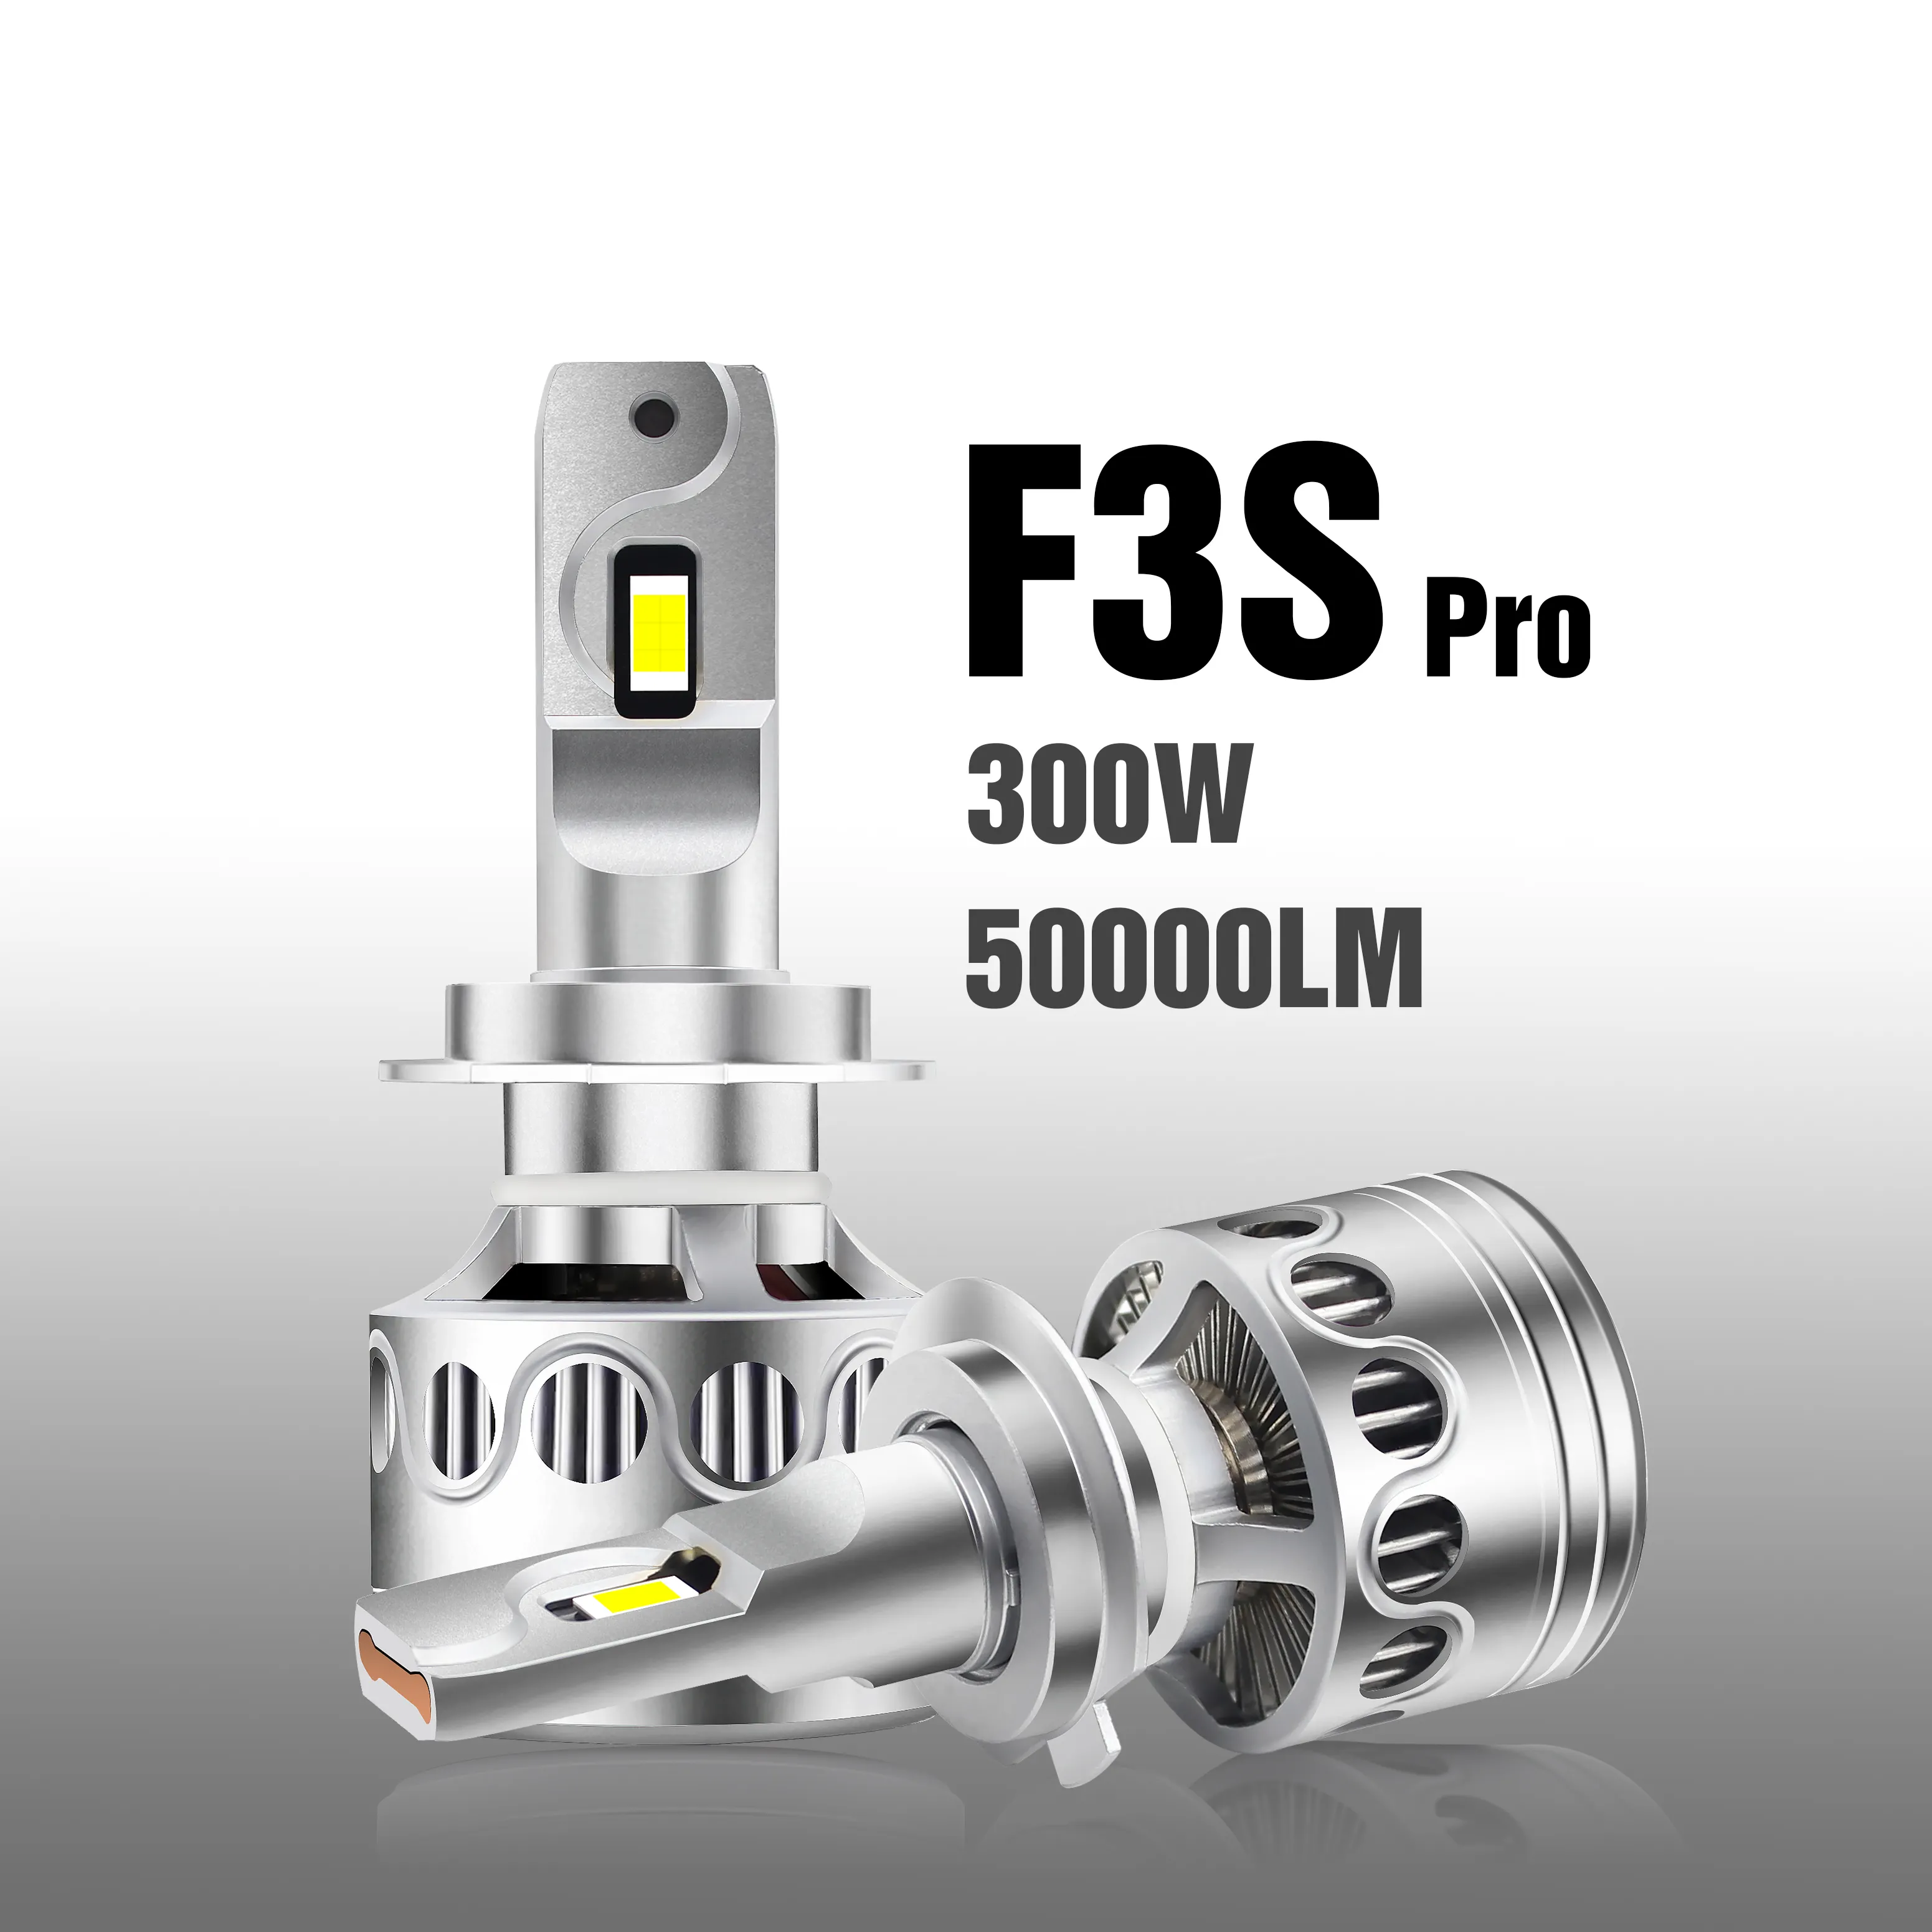 Đèn Pha Led Ô Tô F3S Pro 300W 50000LM Faros, Đèn Pha LED Hi/Lo Beam H7 H11 9006 9007 HB5, Bóng Đèn Pha LED 12V, Đèn LED H4